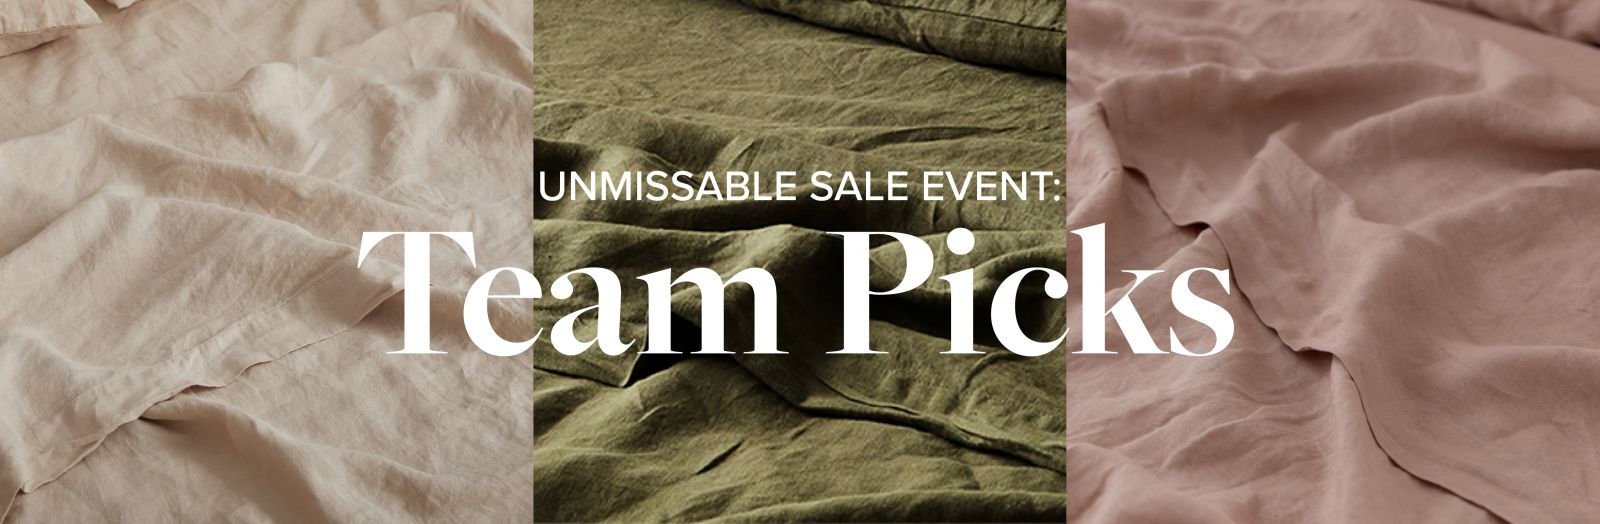 Team Picks: Unmissable Sale Event